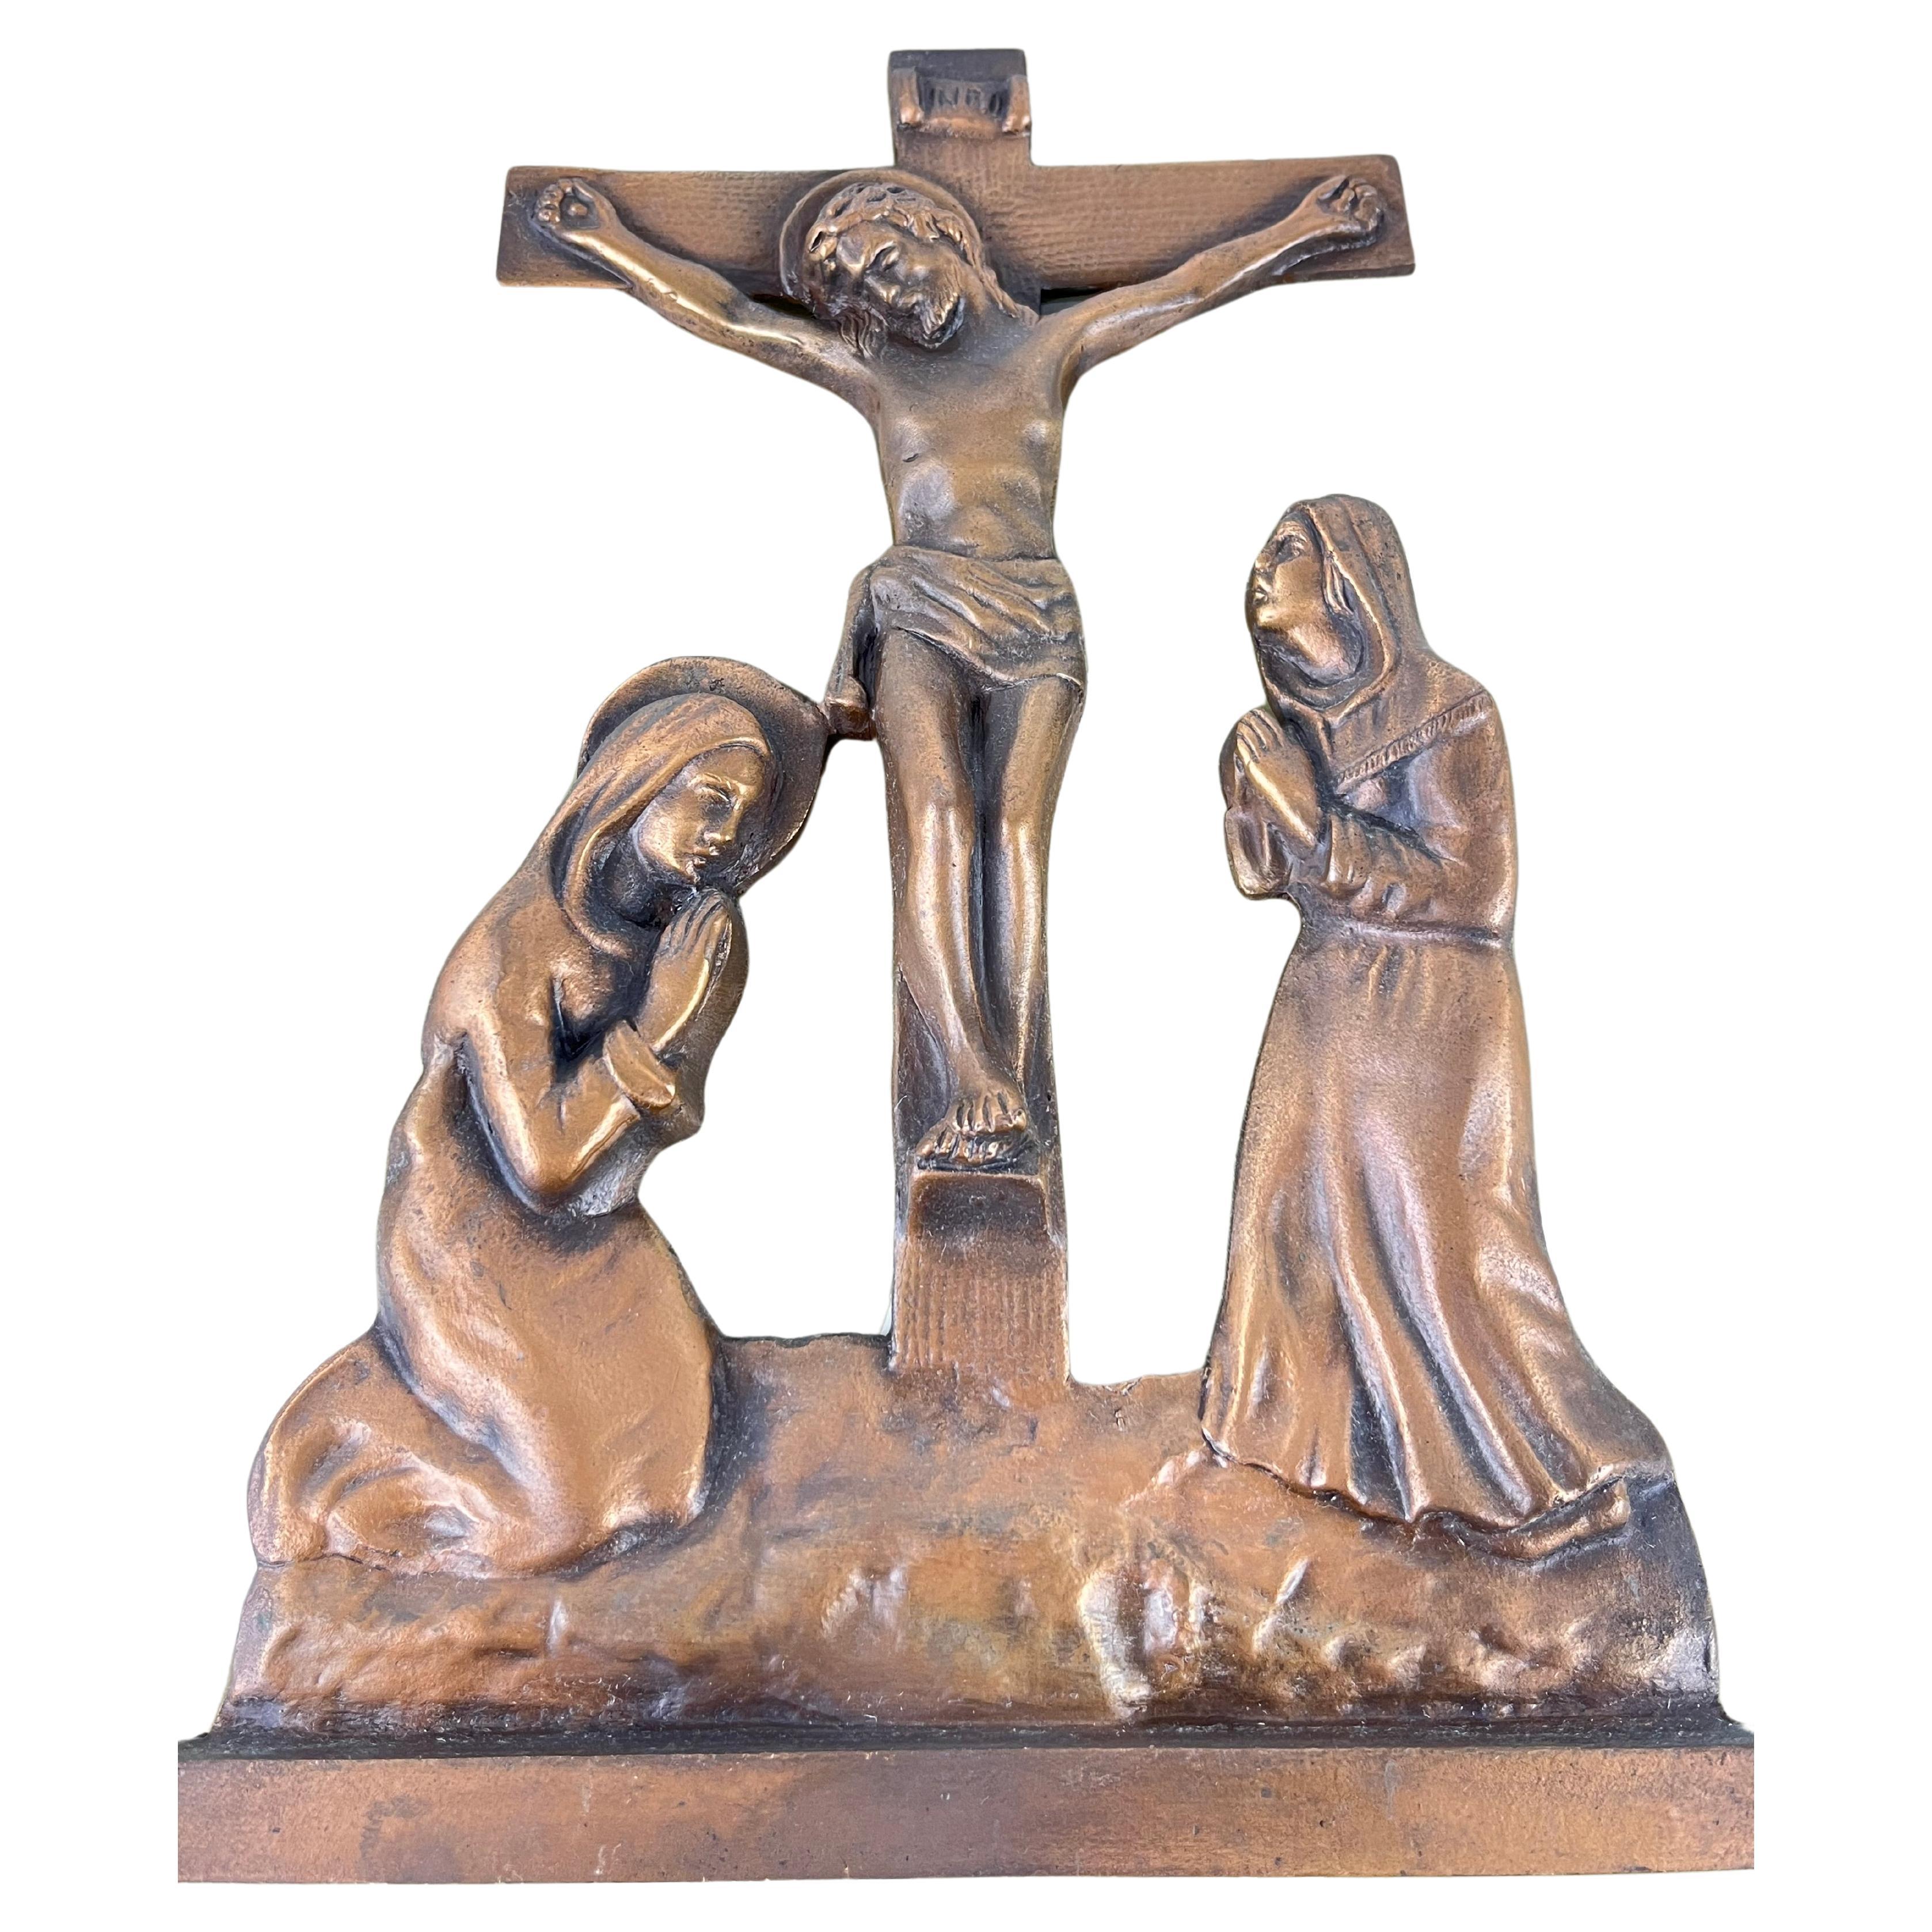 Jésus en croix, bronze sur plexiglas, Italie, années 1970
Trouvé dans un appartement noble, intact, petits signes de vieillissement.